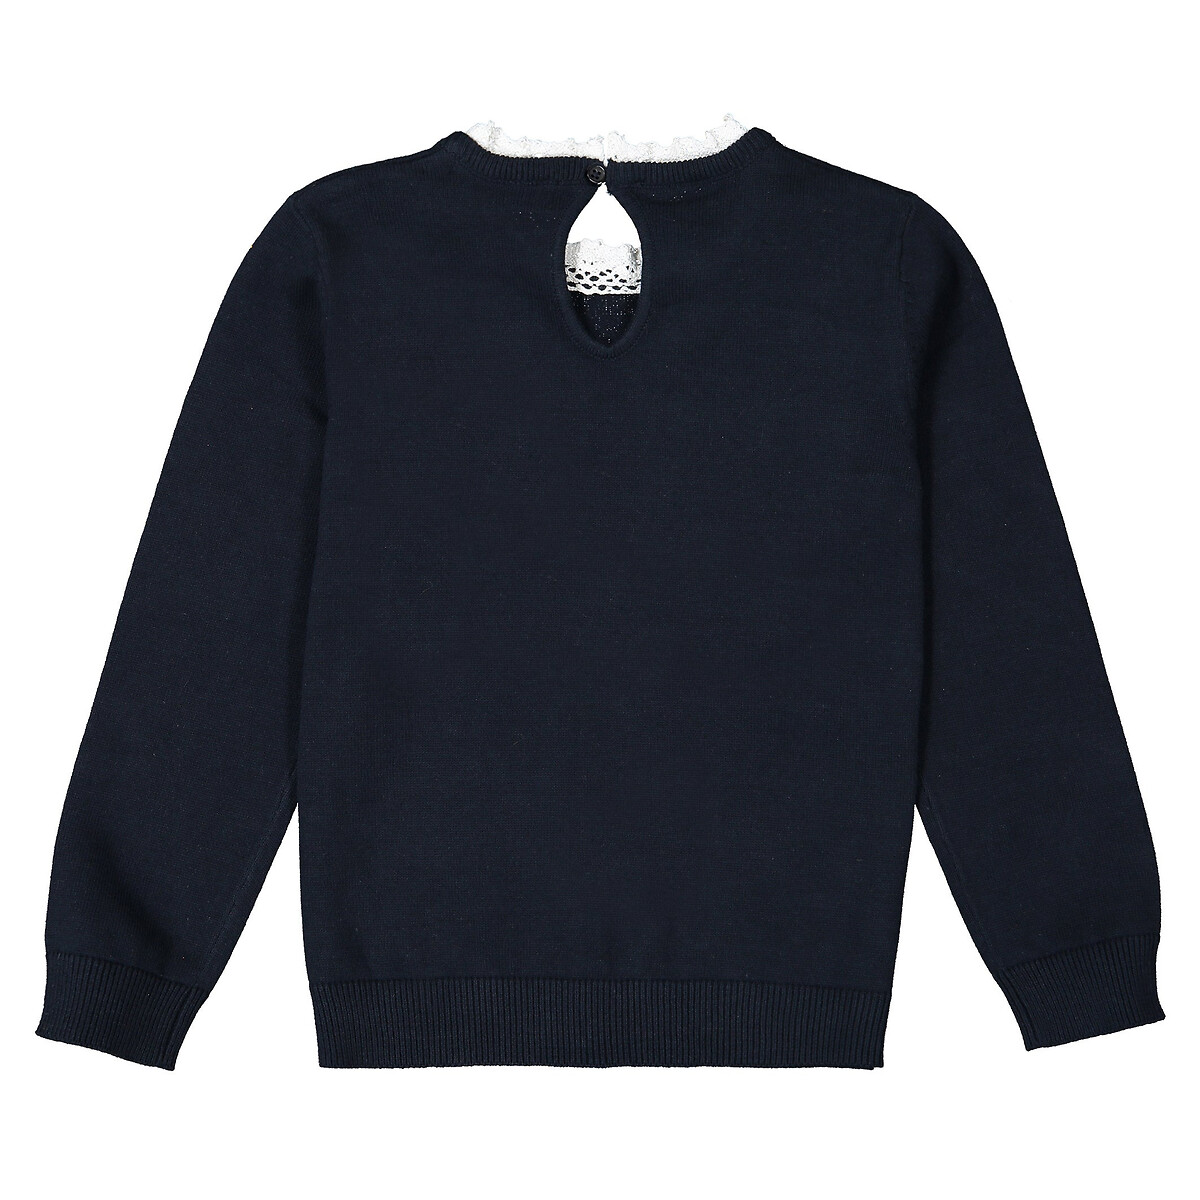 Пуловер LaRedoute С эффектом 2 в 1 воротник связан крючком 3-12 лет 12 лет -150 см синий, размер 12 лет -150 см - фото 3